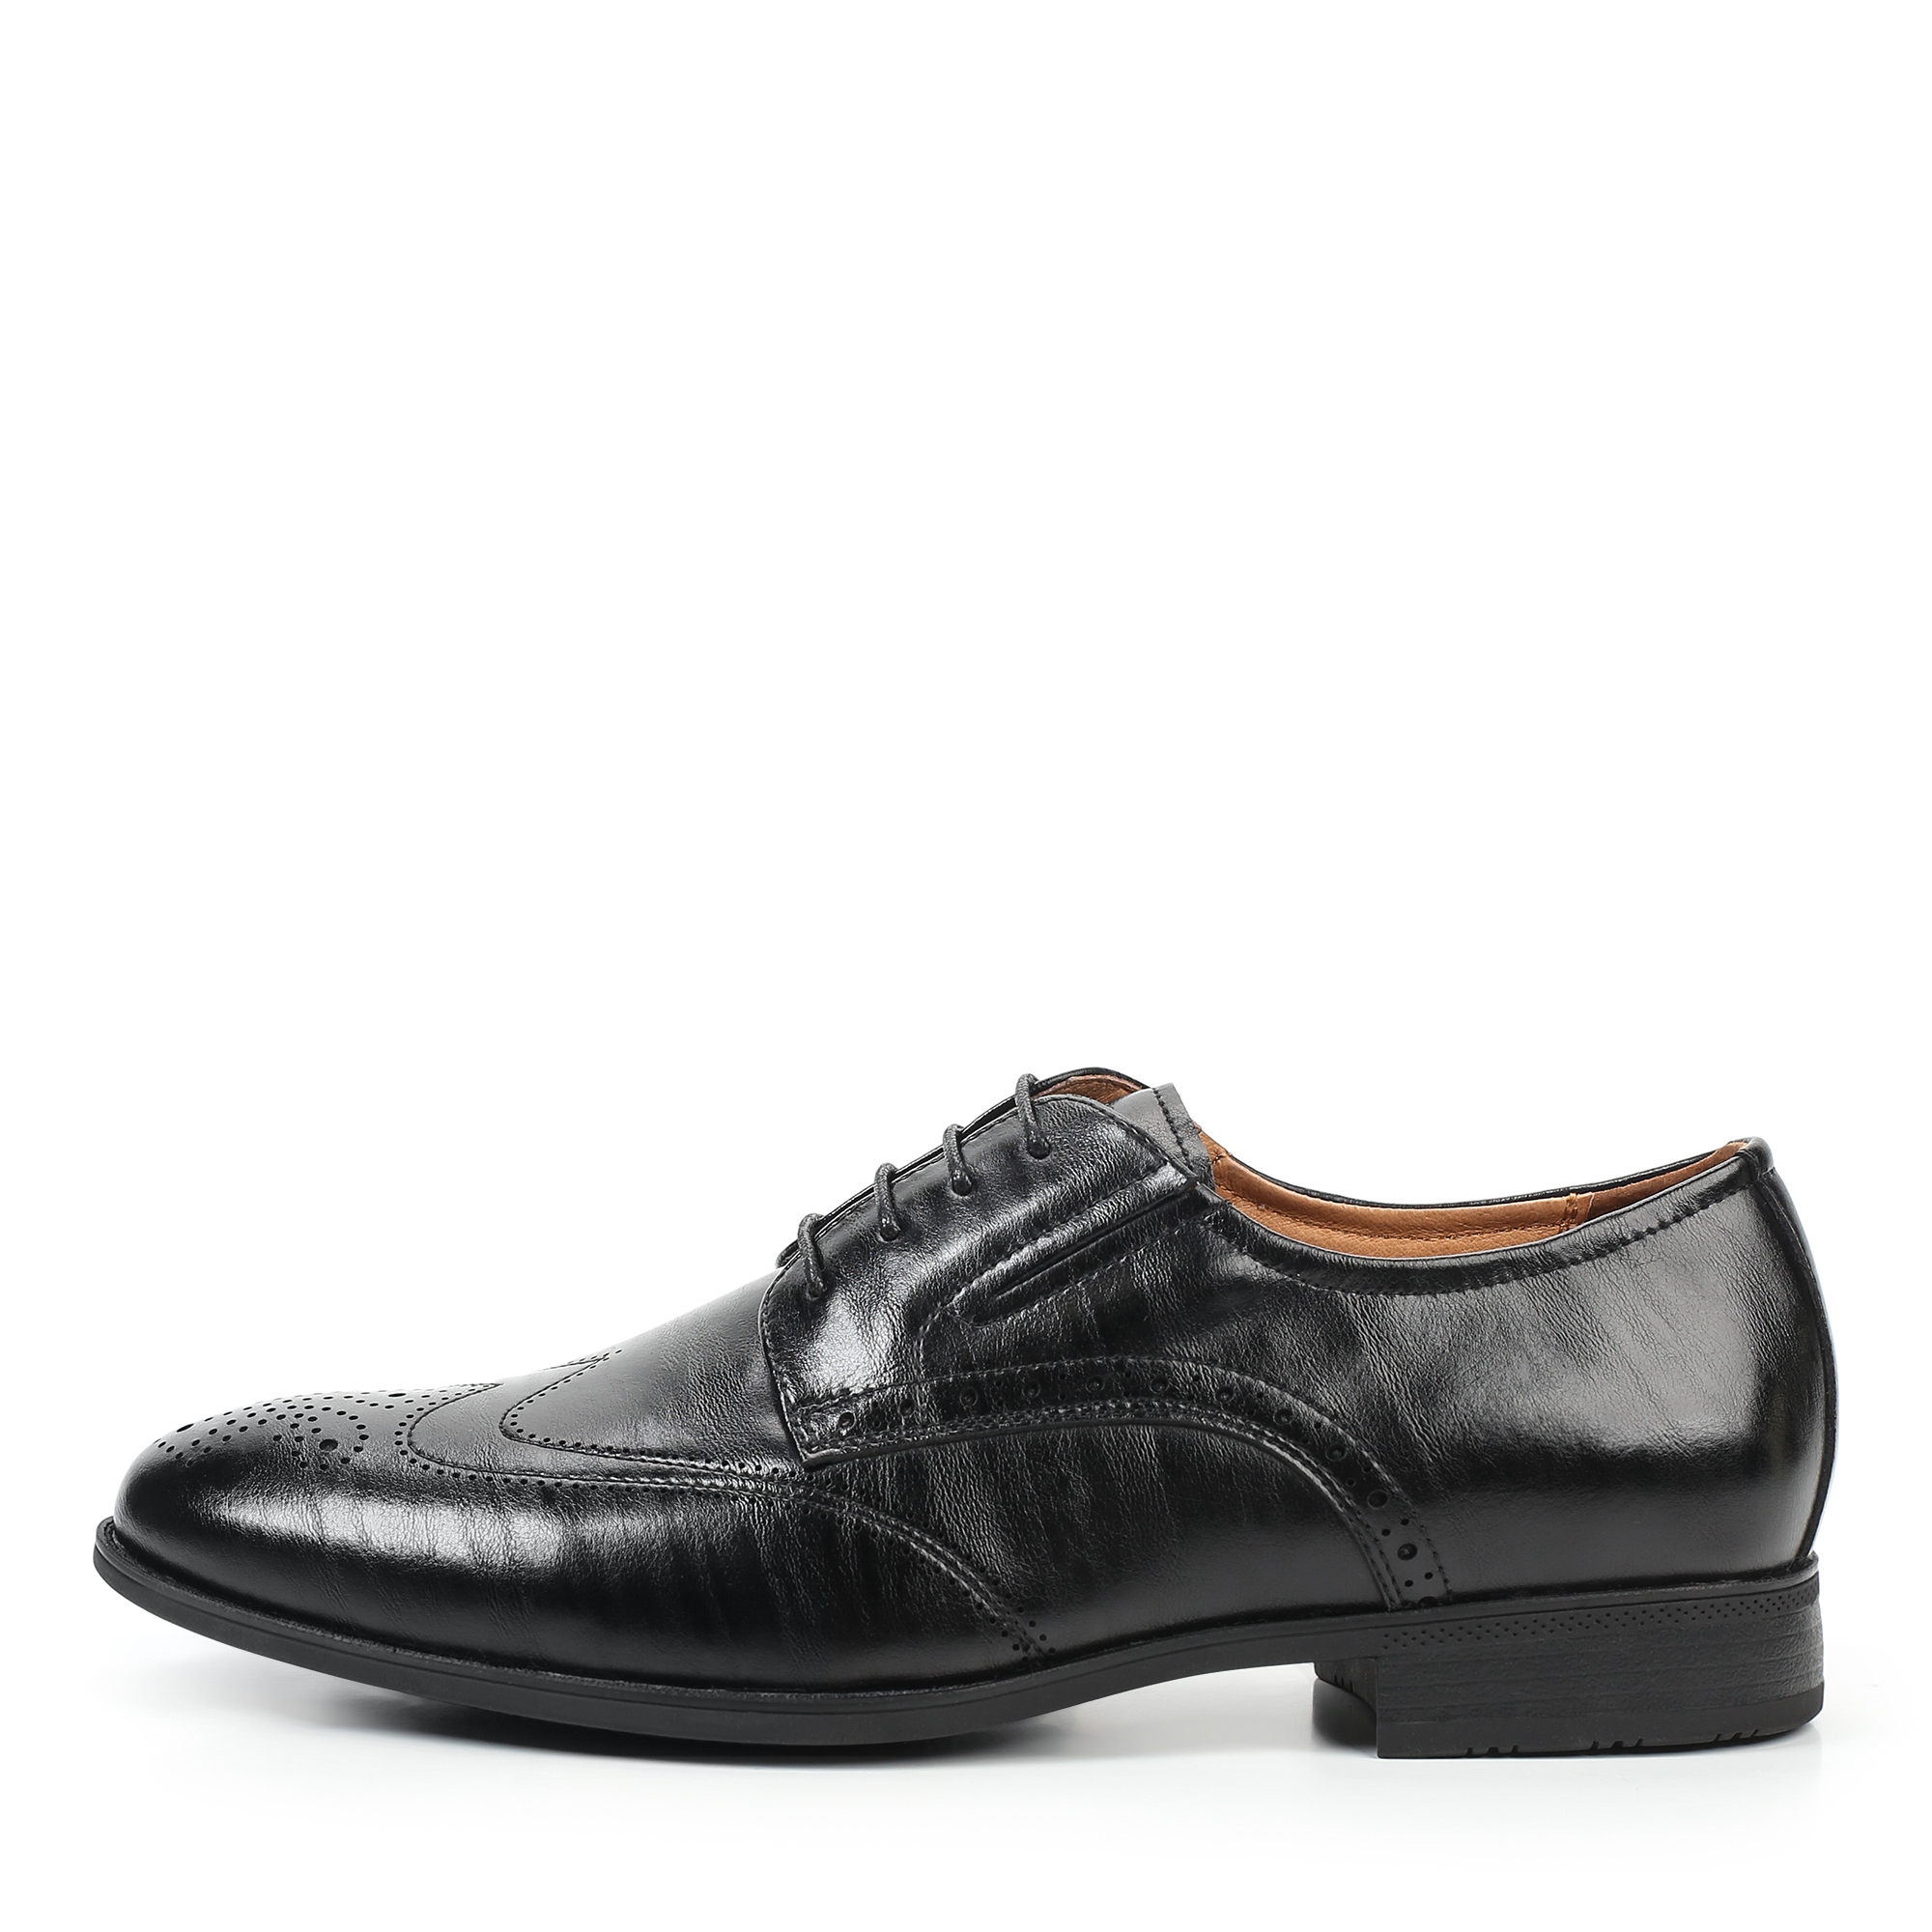 Туфли/полуботинки Thomas Munz 058-607A-1602, цвет черный, размер 43